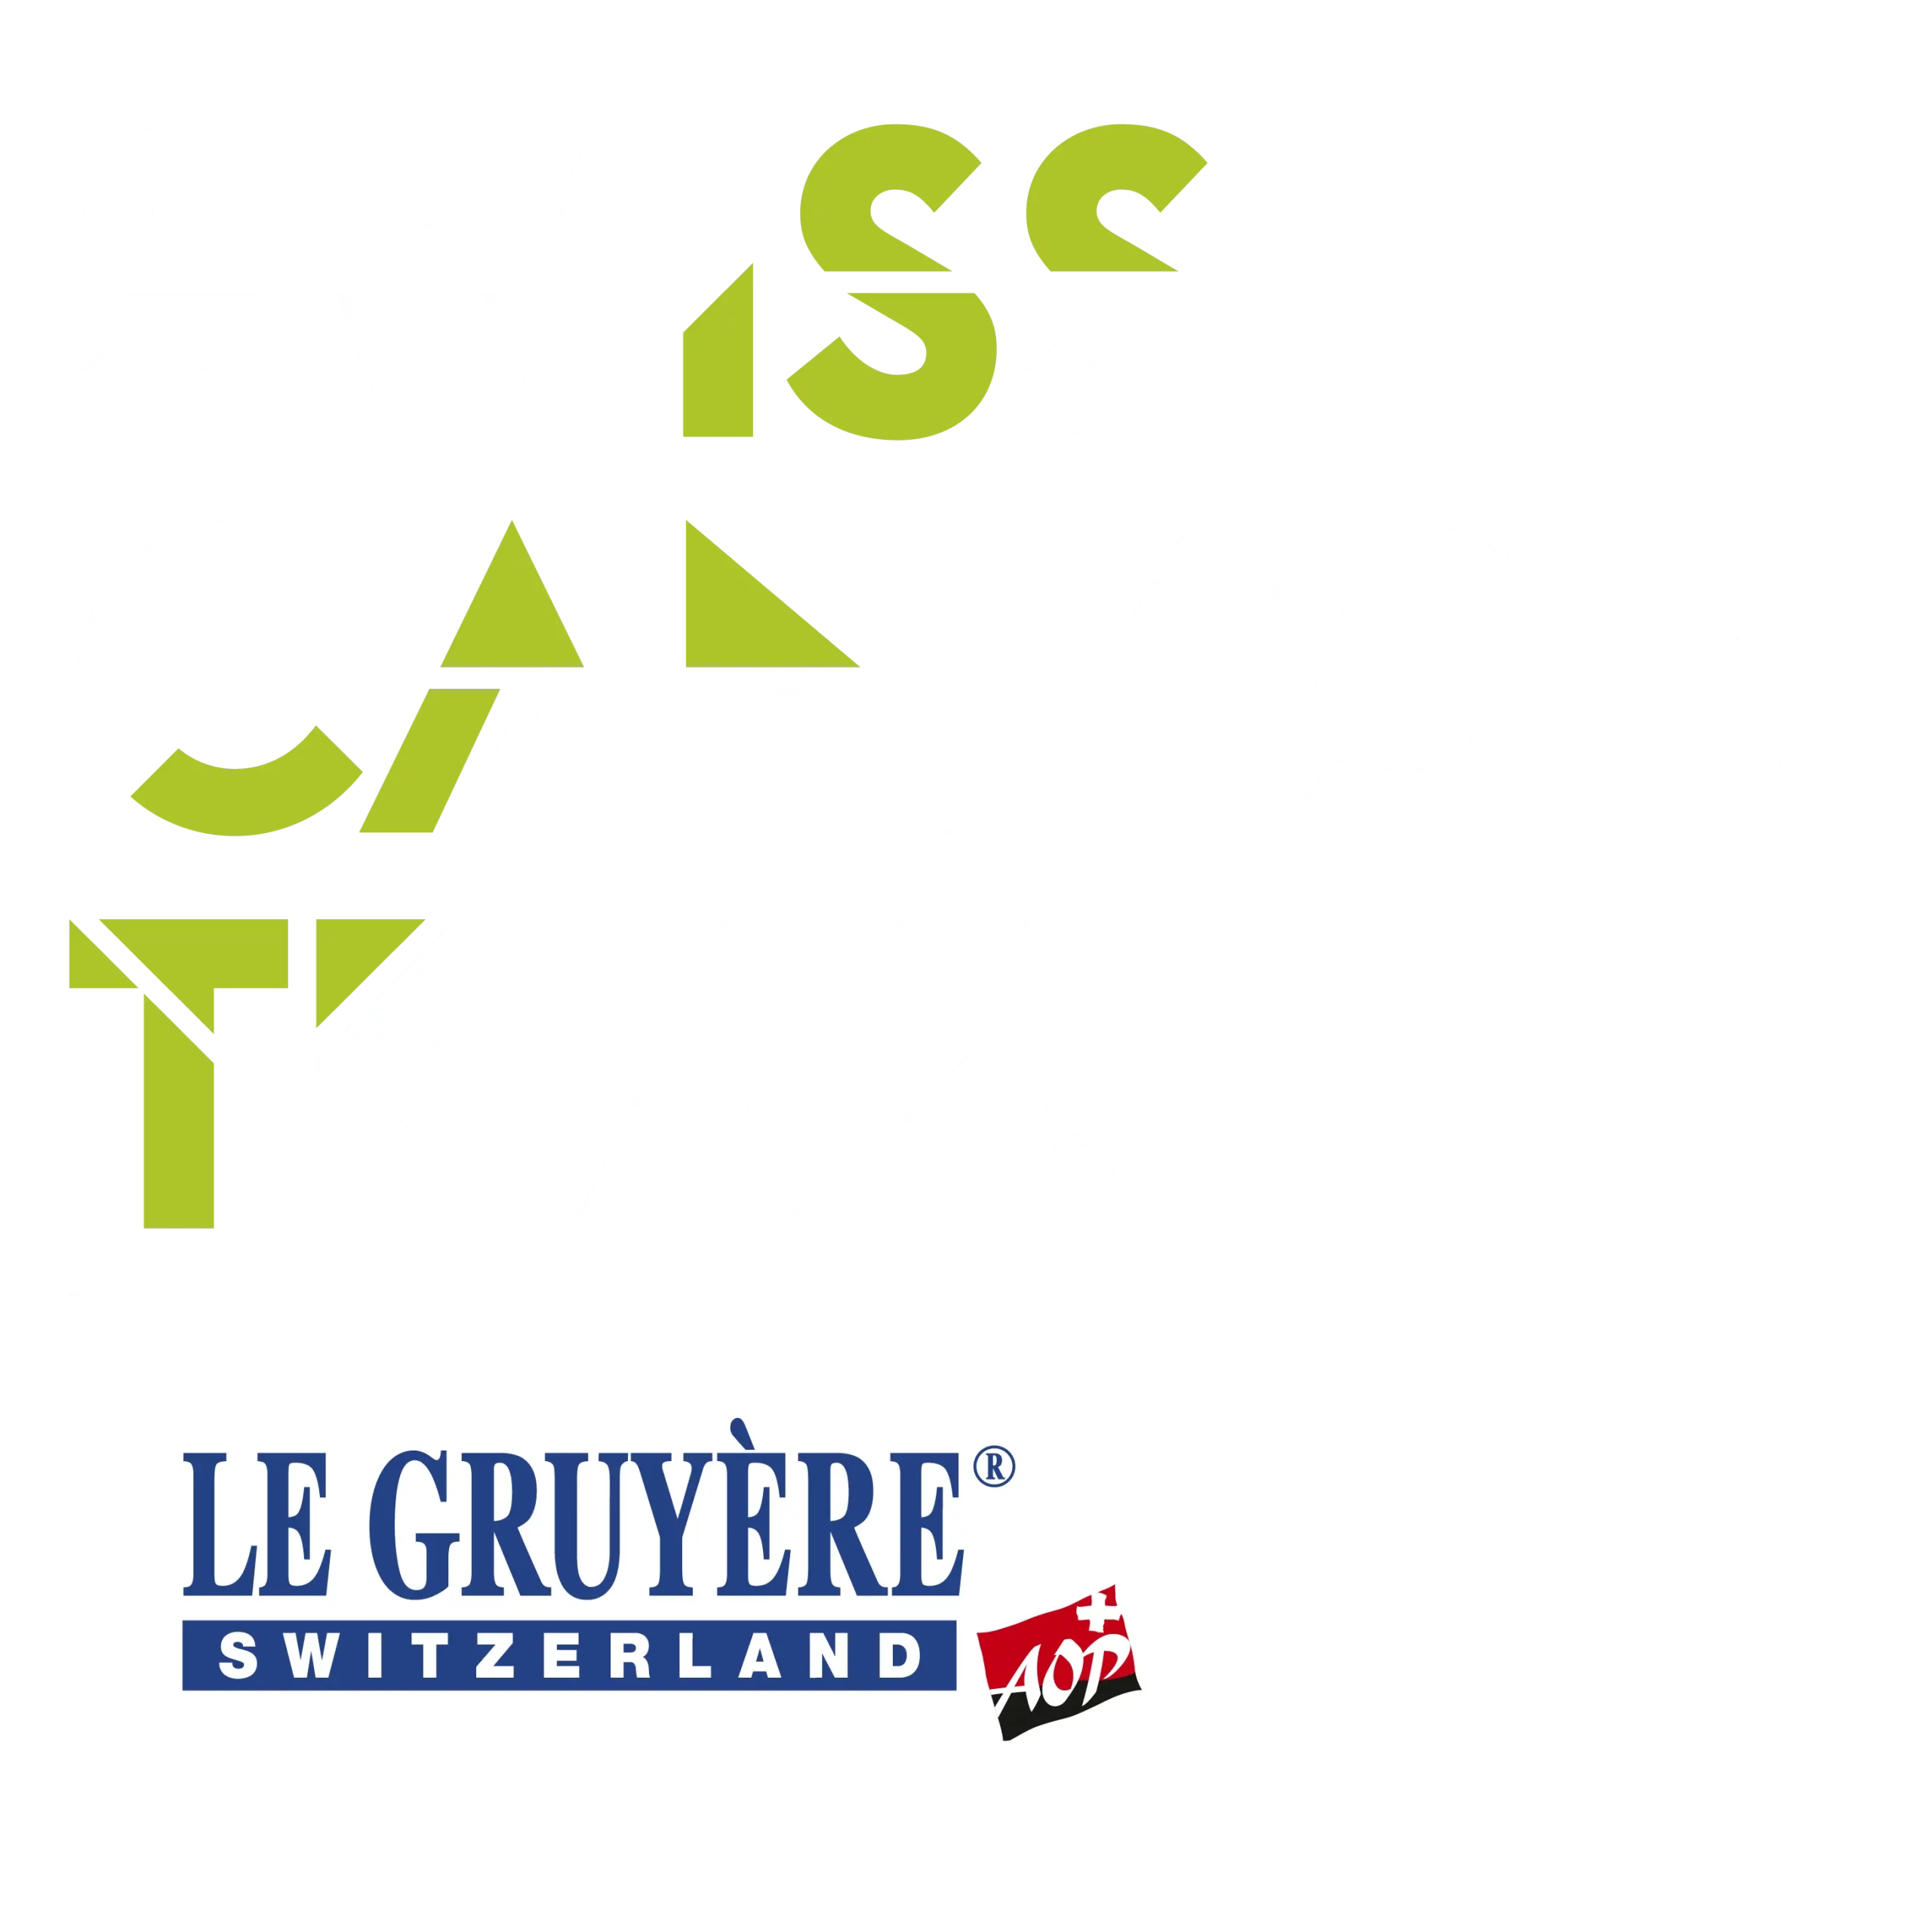 White Swiss Canyon Trail Gruyère logo